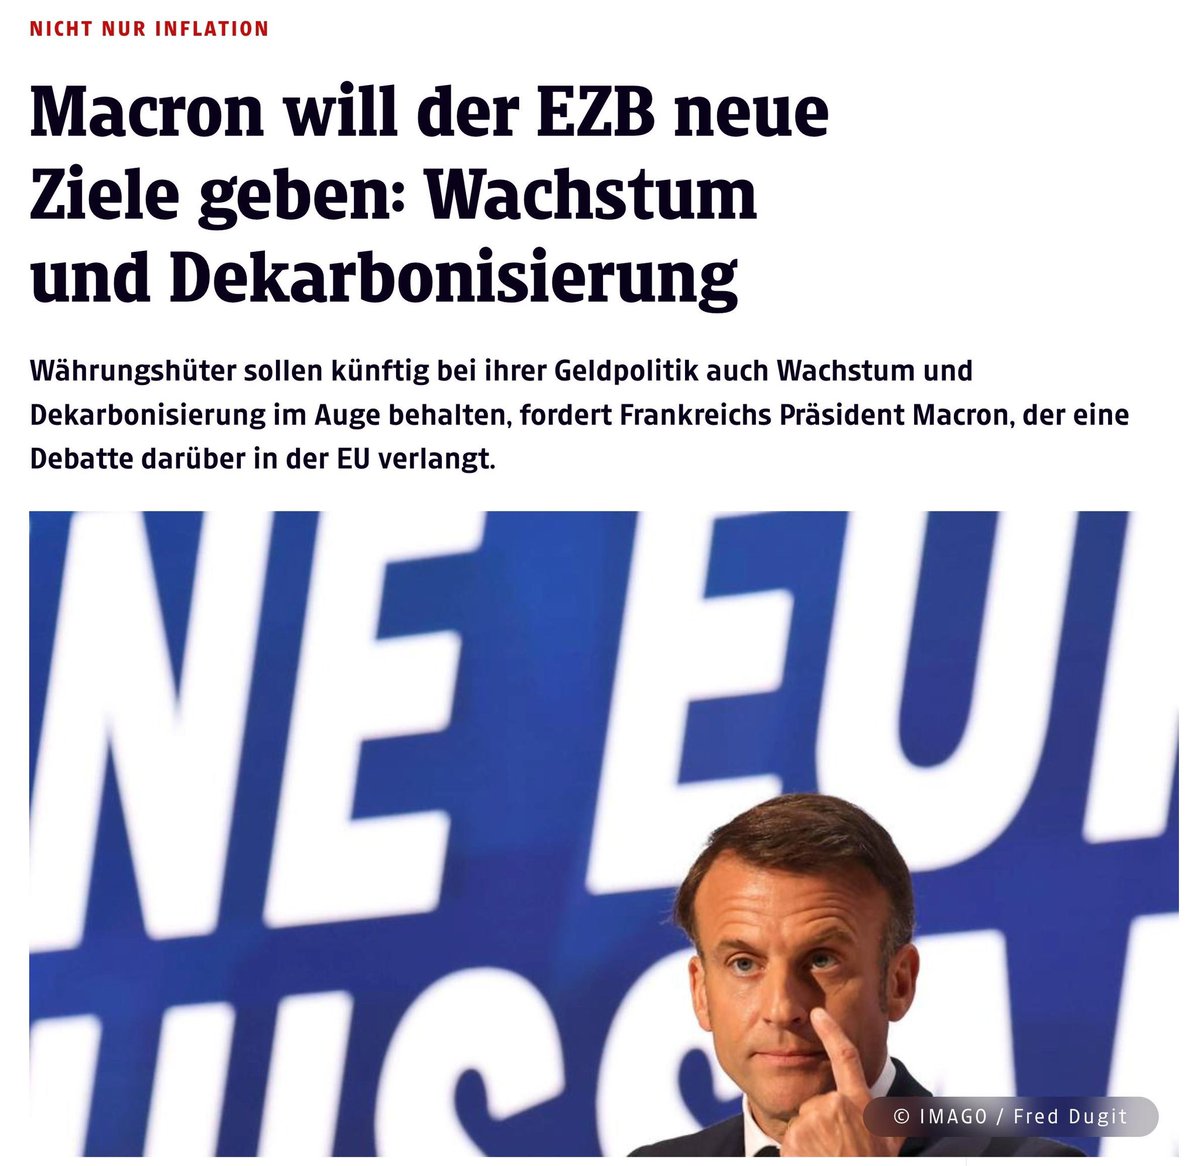 Macron sagt, dass die EZB sich um Wirtschaftswachstum und Dekarbonisierung kümmern soll.

Ich übersetze einmal:

Macron will höhere Inflation. 

Beim Blick auf die französischen Staatsfinanzen kann dies kaum verwundern.